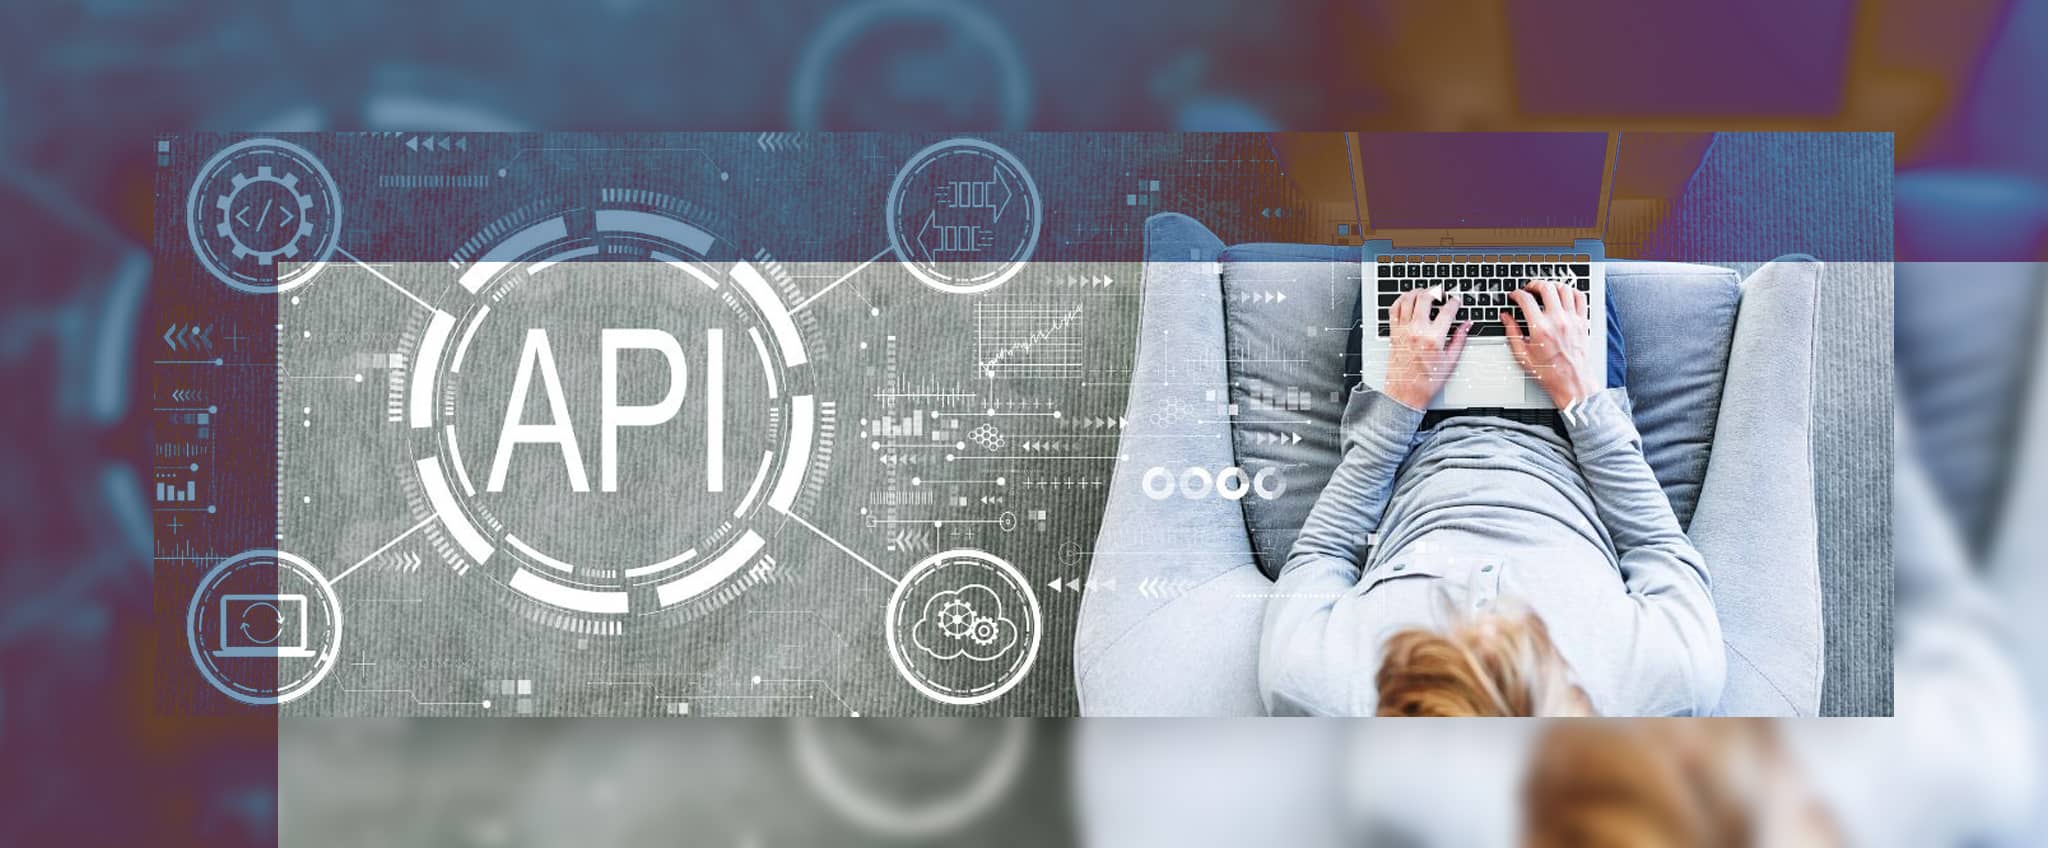 اتصال به فروشگاه از طریق API به شرکت‌های ارائه‌دهنده سرویس پیک کمک می‌کند تا فعالیت‌های متنوعی انجام دهند؛ از ایجاد سفارش و تولید بارنامه گرفته تا ردیابی سفارش و اعلام به مشتری. استفاده از API تاثیر مستقیمی بر بهینه‌سازی فعالیت‌ها و افزایش کارآیی دارد.